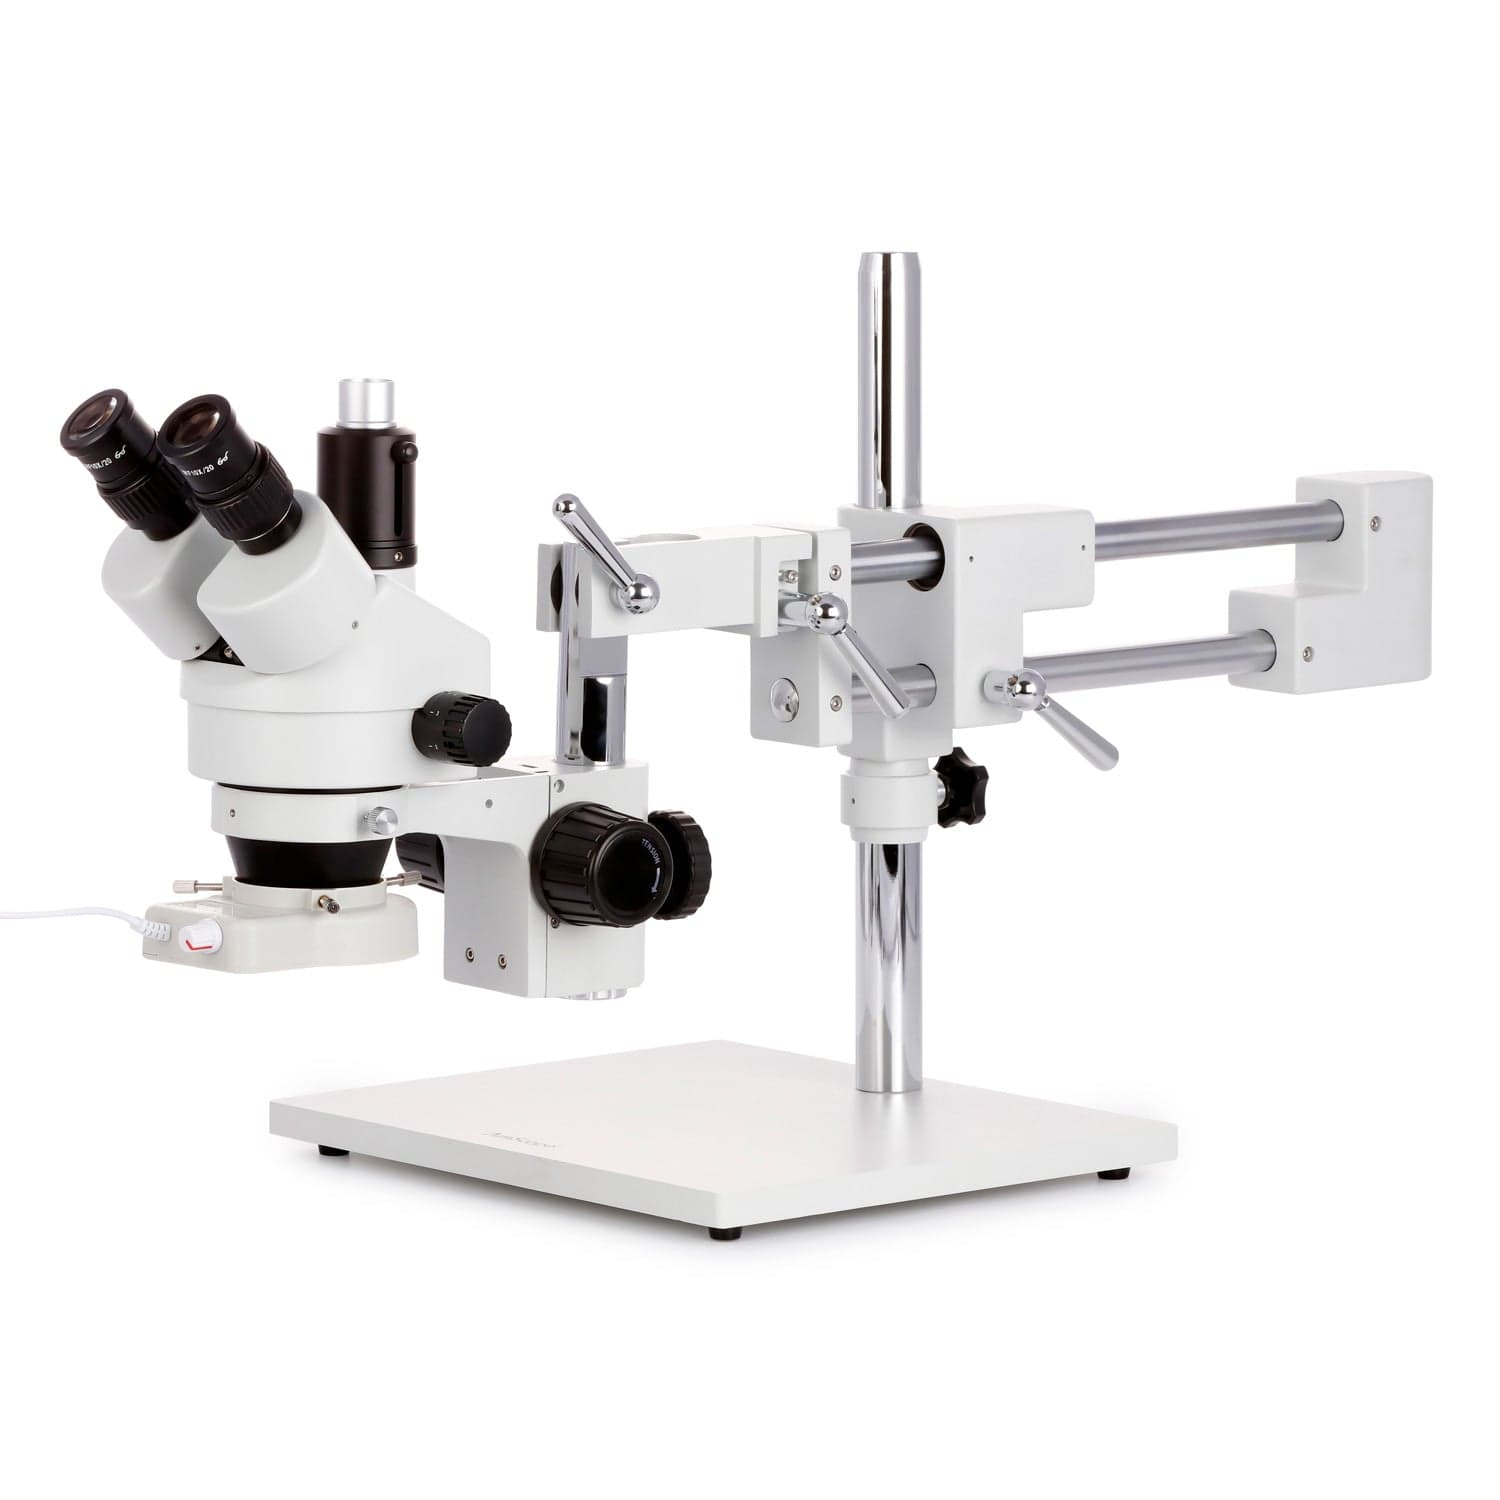 AmScope - Compound Microscope - M220-3MP